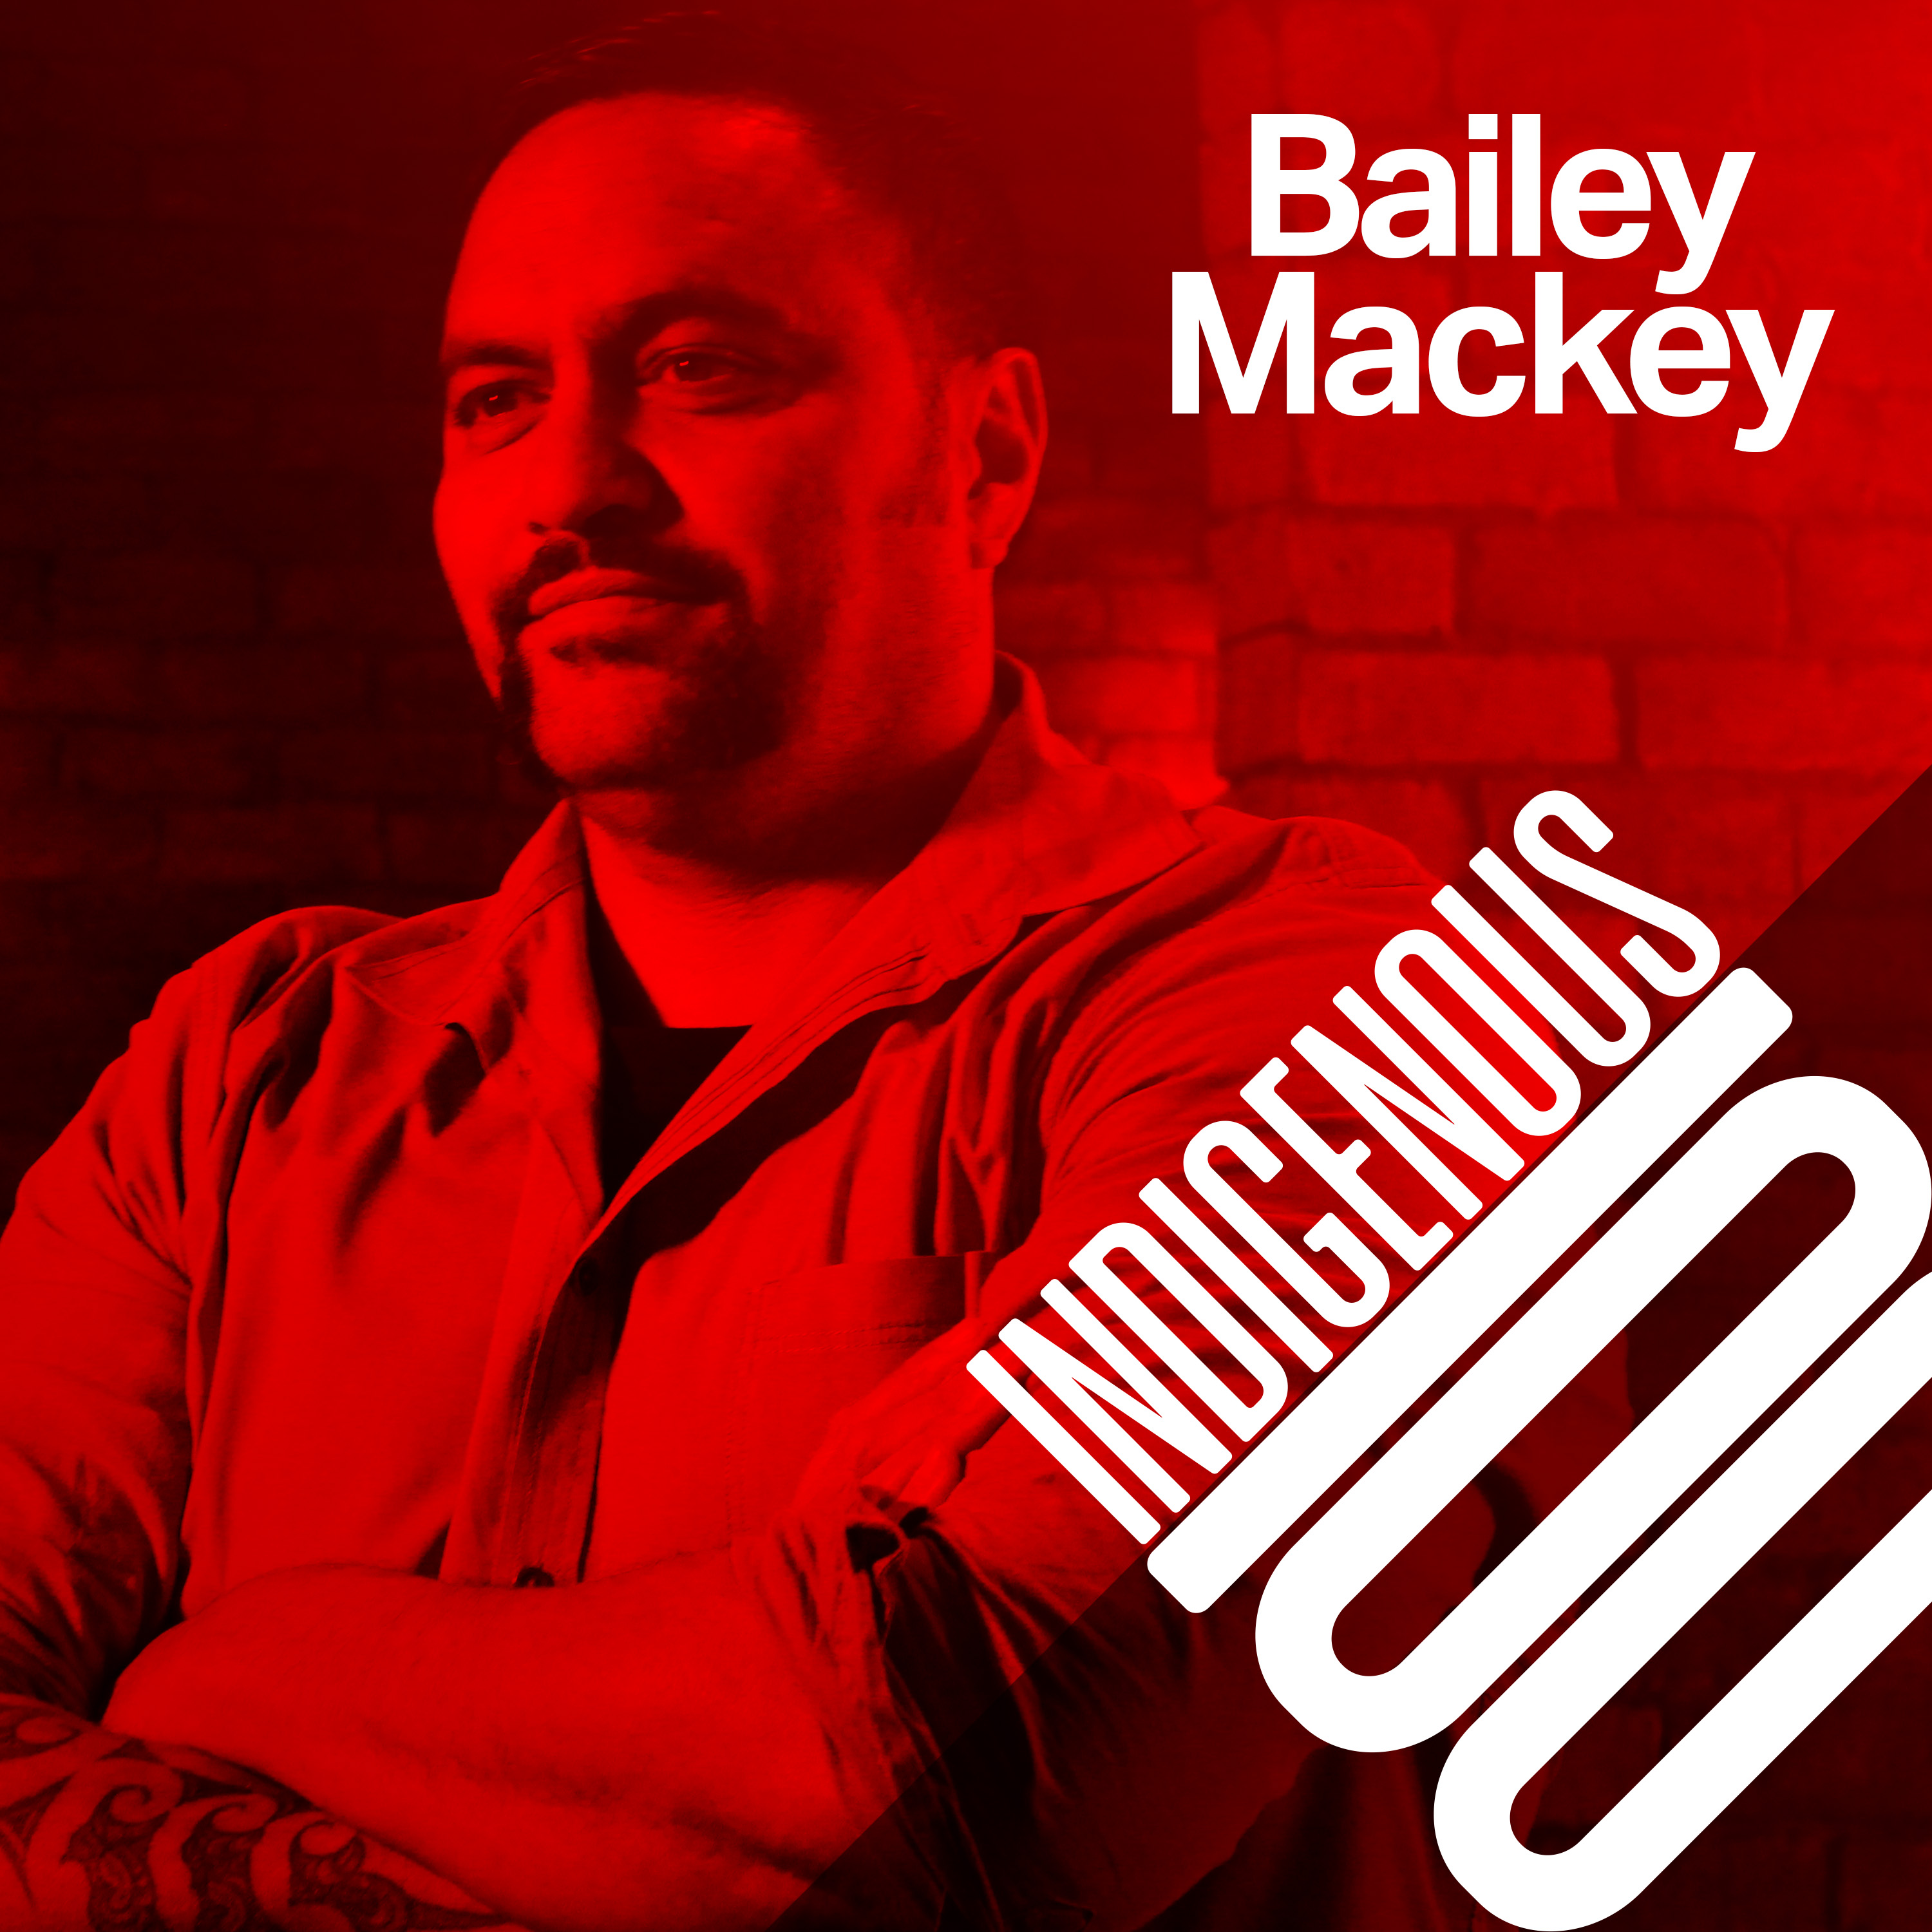 Bailey Mackey